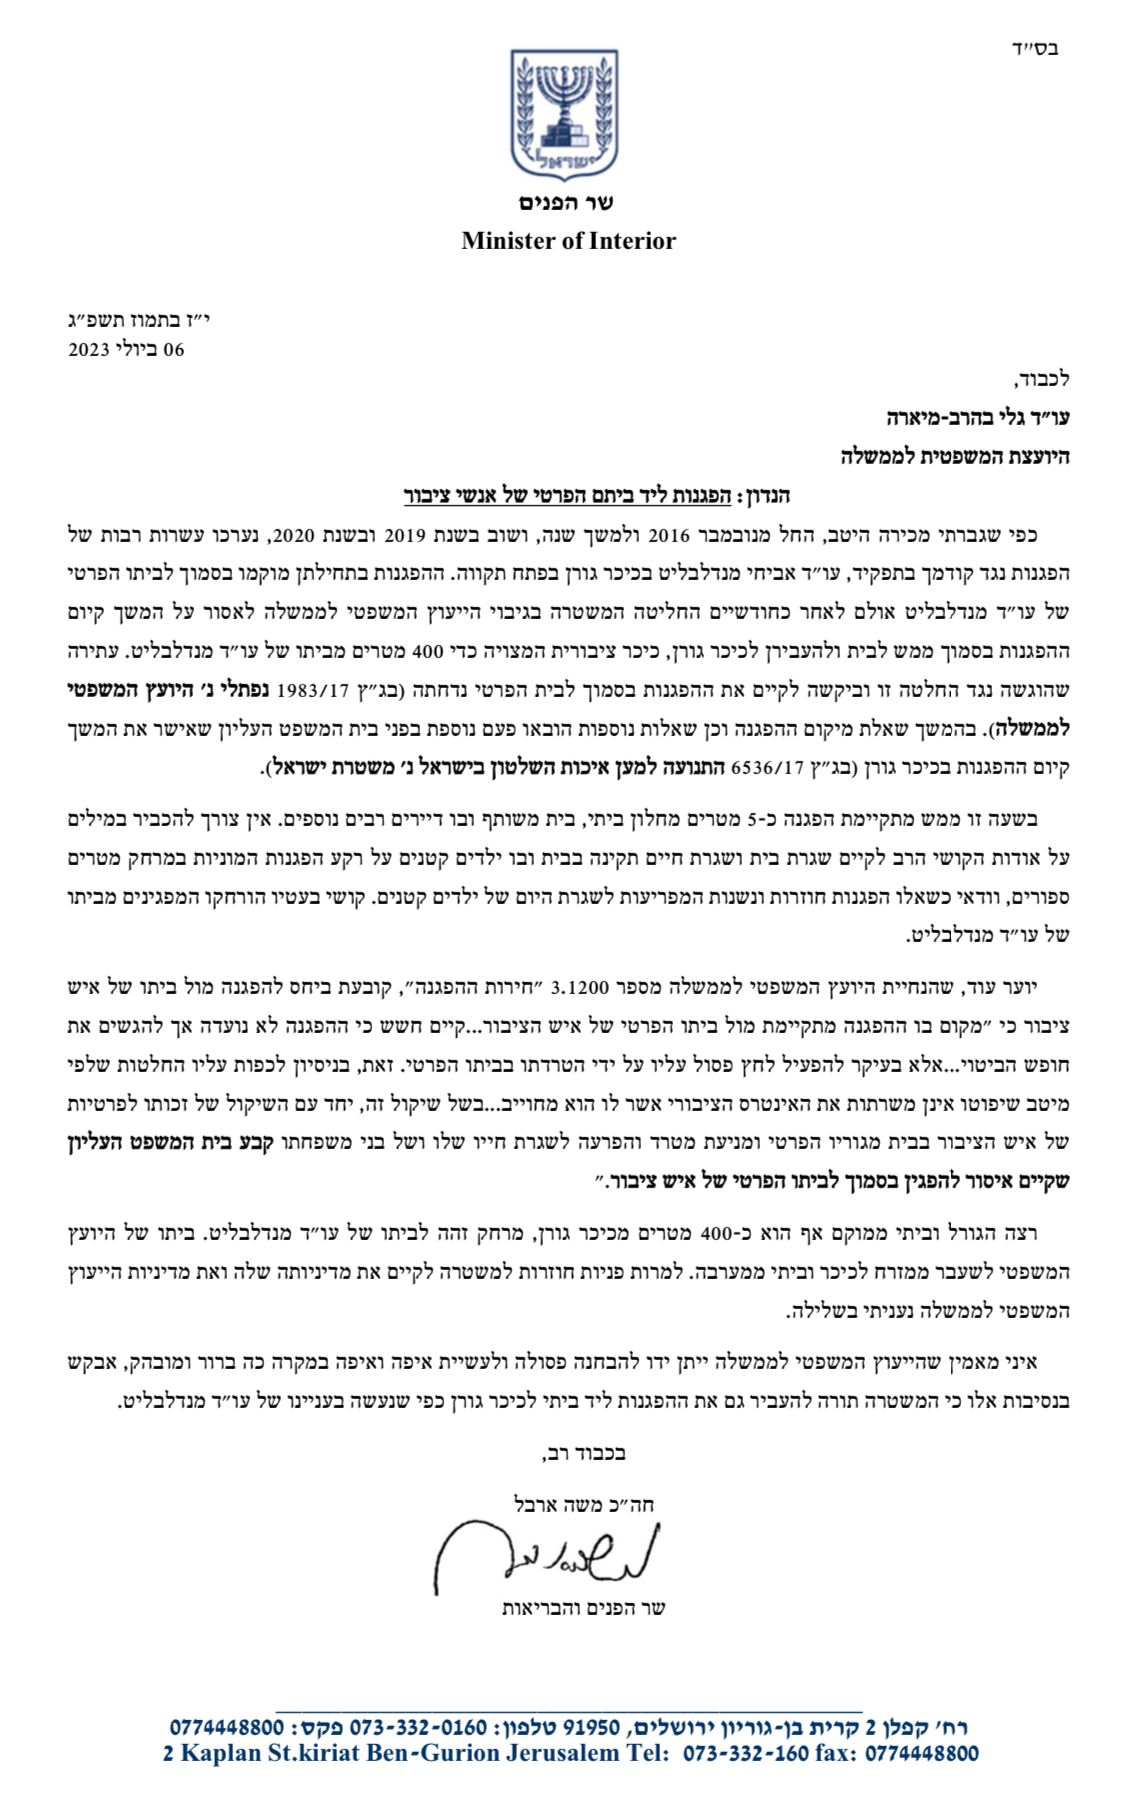 Moshe Arbel Letter